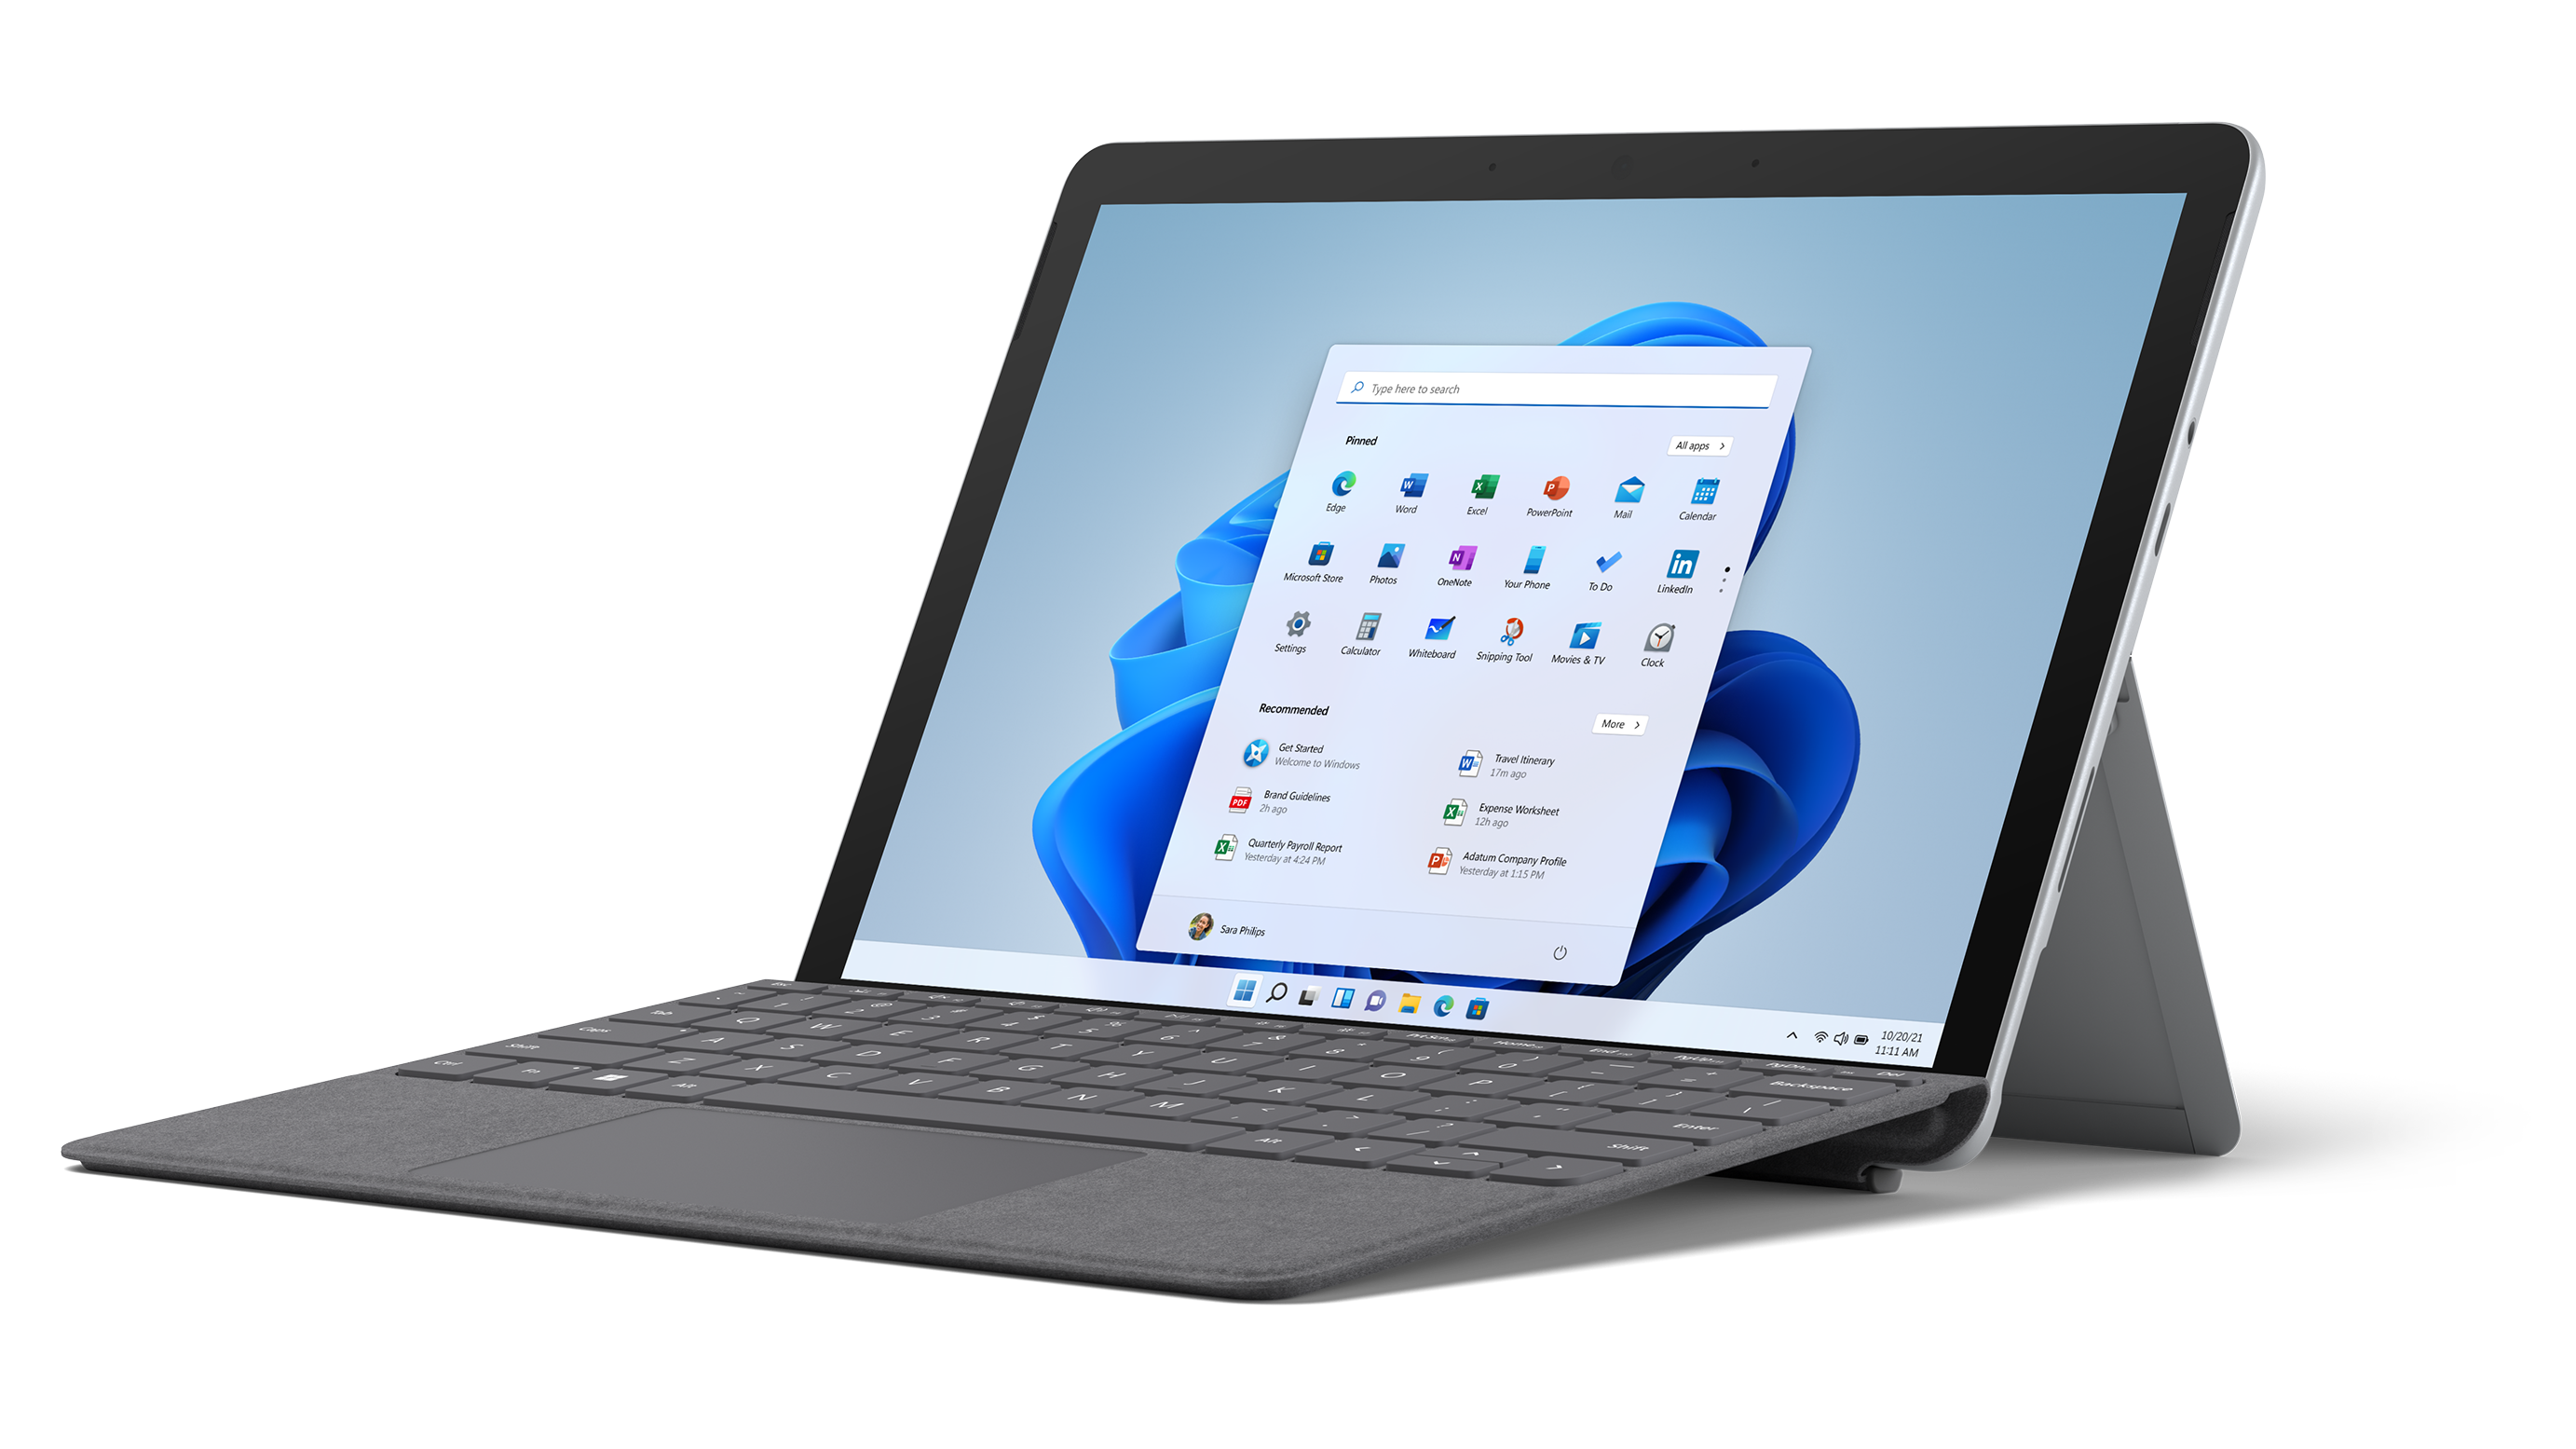 Sắm ngay Surface Go 3 để trải nghiệm một chiếc laptop nhỏ gọn, đa năng và tiện lợi, cùng khả năng xử lý tốt và tối ưu hóa cho các ứng dụng thịnh hành.